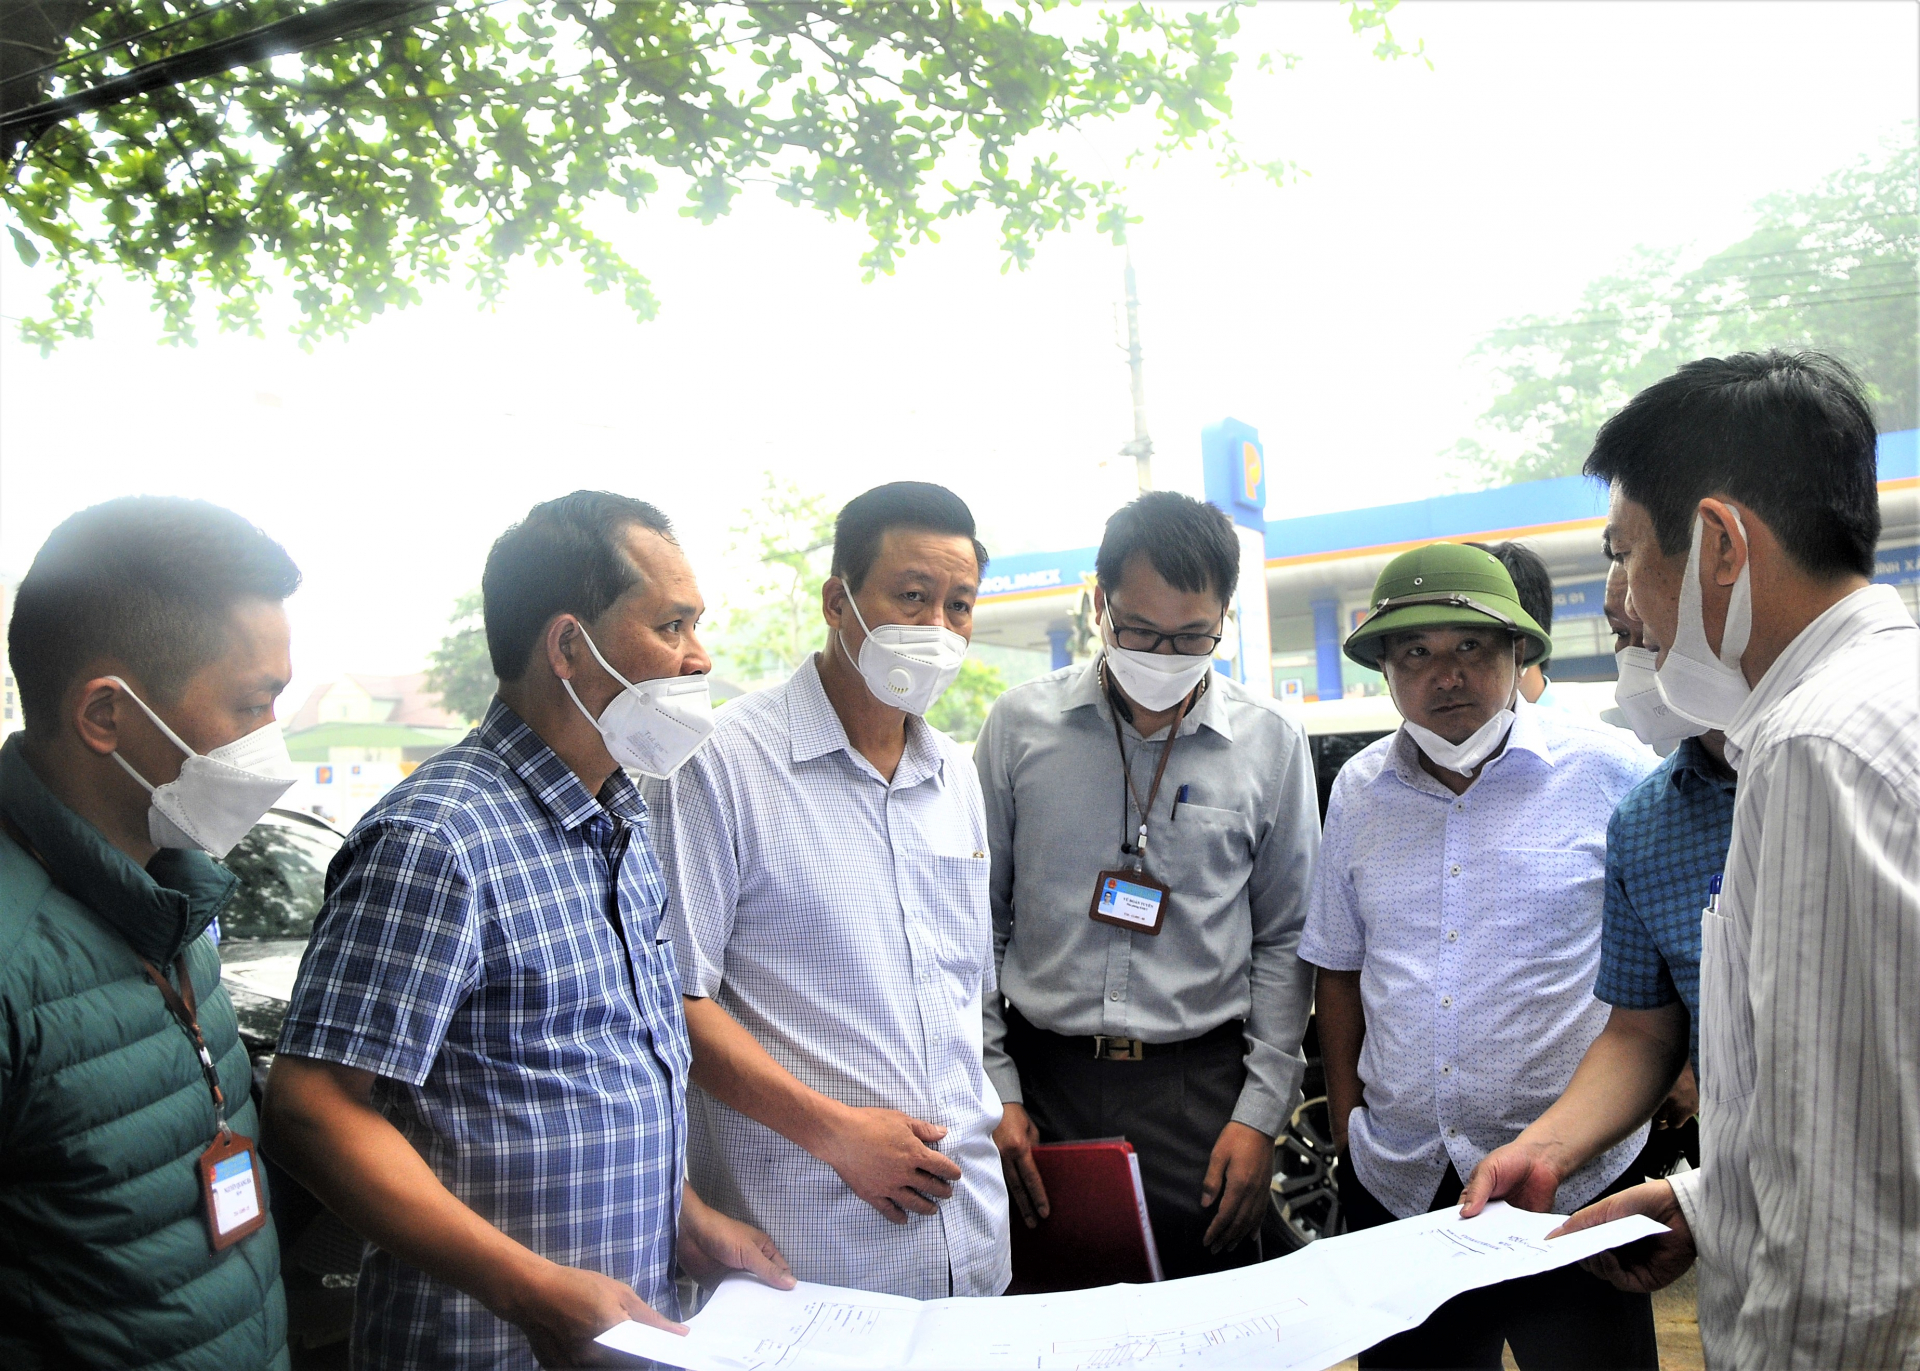 Chủ tịch UBND tỉnh Nguyễn Văn Sơn kiểm tra bản đồ khu vực xây dựng đập dâng nước tạo cảnh quan, đoạn đối diện cây xăng cầu Mè.